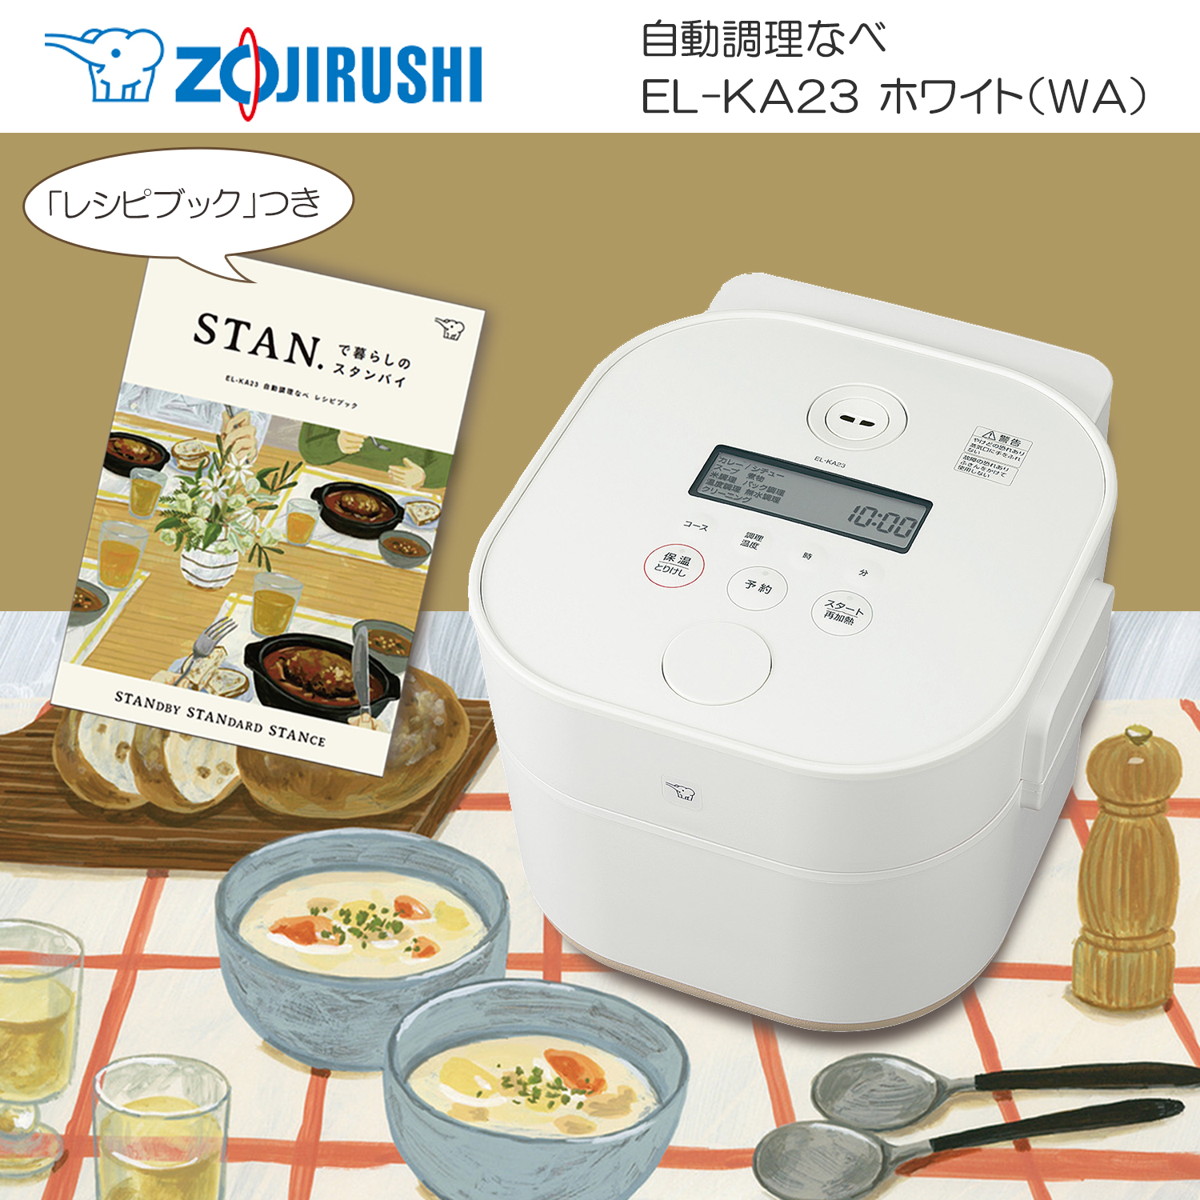 ZOJIRUSHI 自動調理なべ パック調理対応 ホーローなべ STAN.シリーズ スタン おしゃれ ホワイト